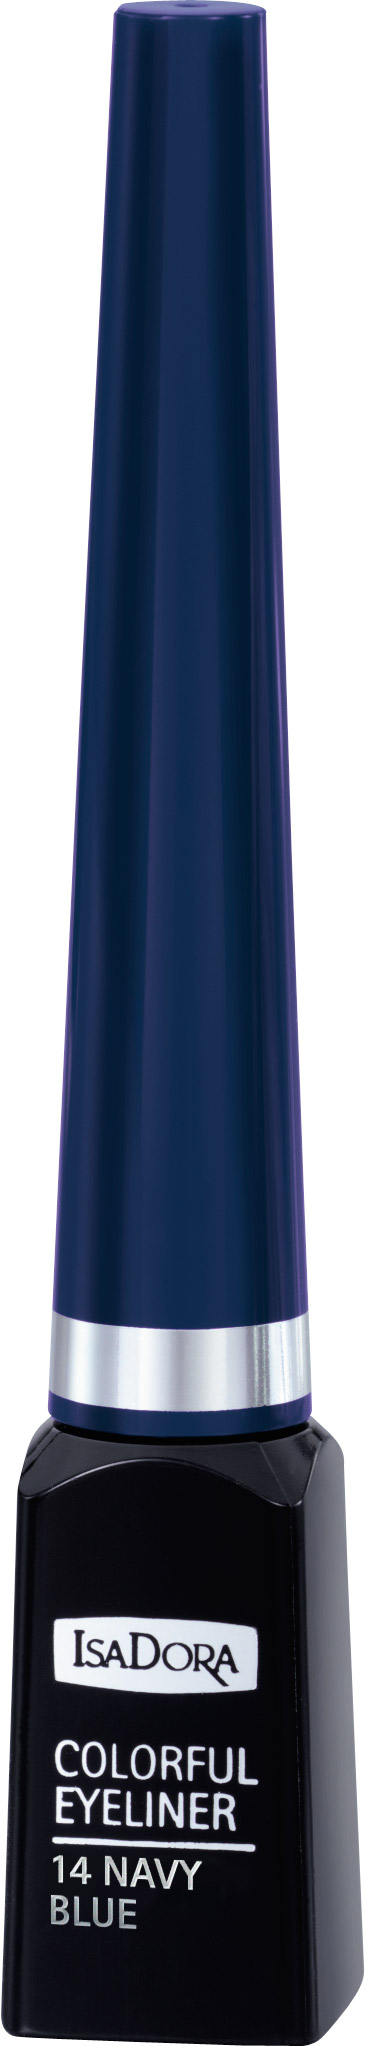 IsaDora Colorful Eyeliner 14 Navy Blue